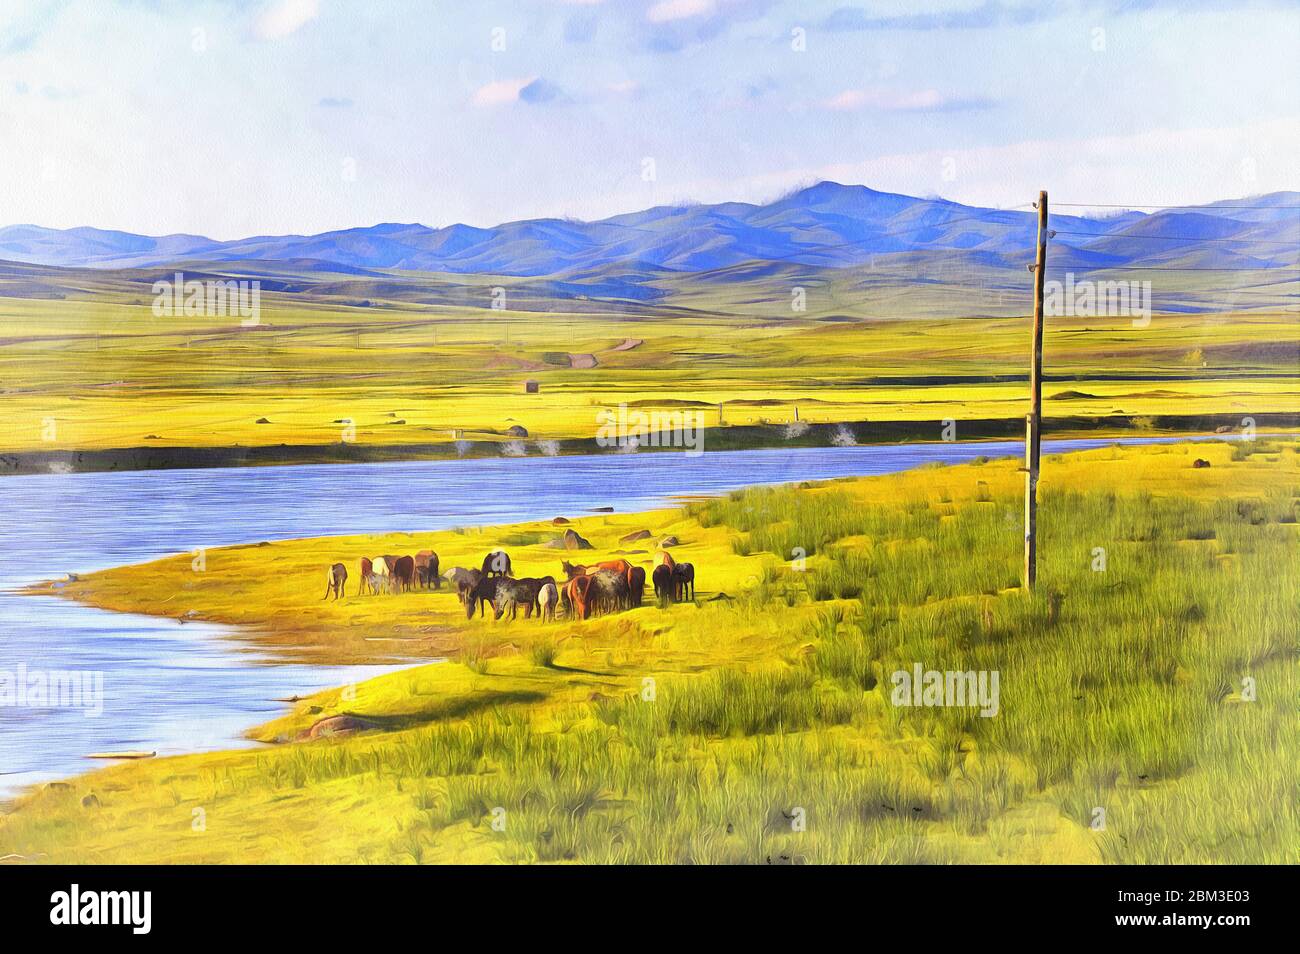 Paysage mongol avec des chevaux la peinture colorée ressemble à l'image Banque D'Images